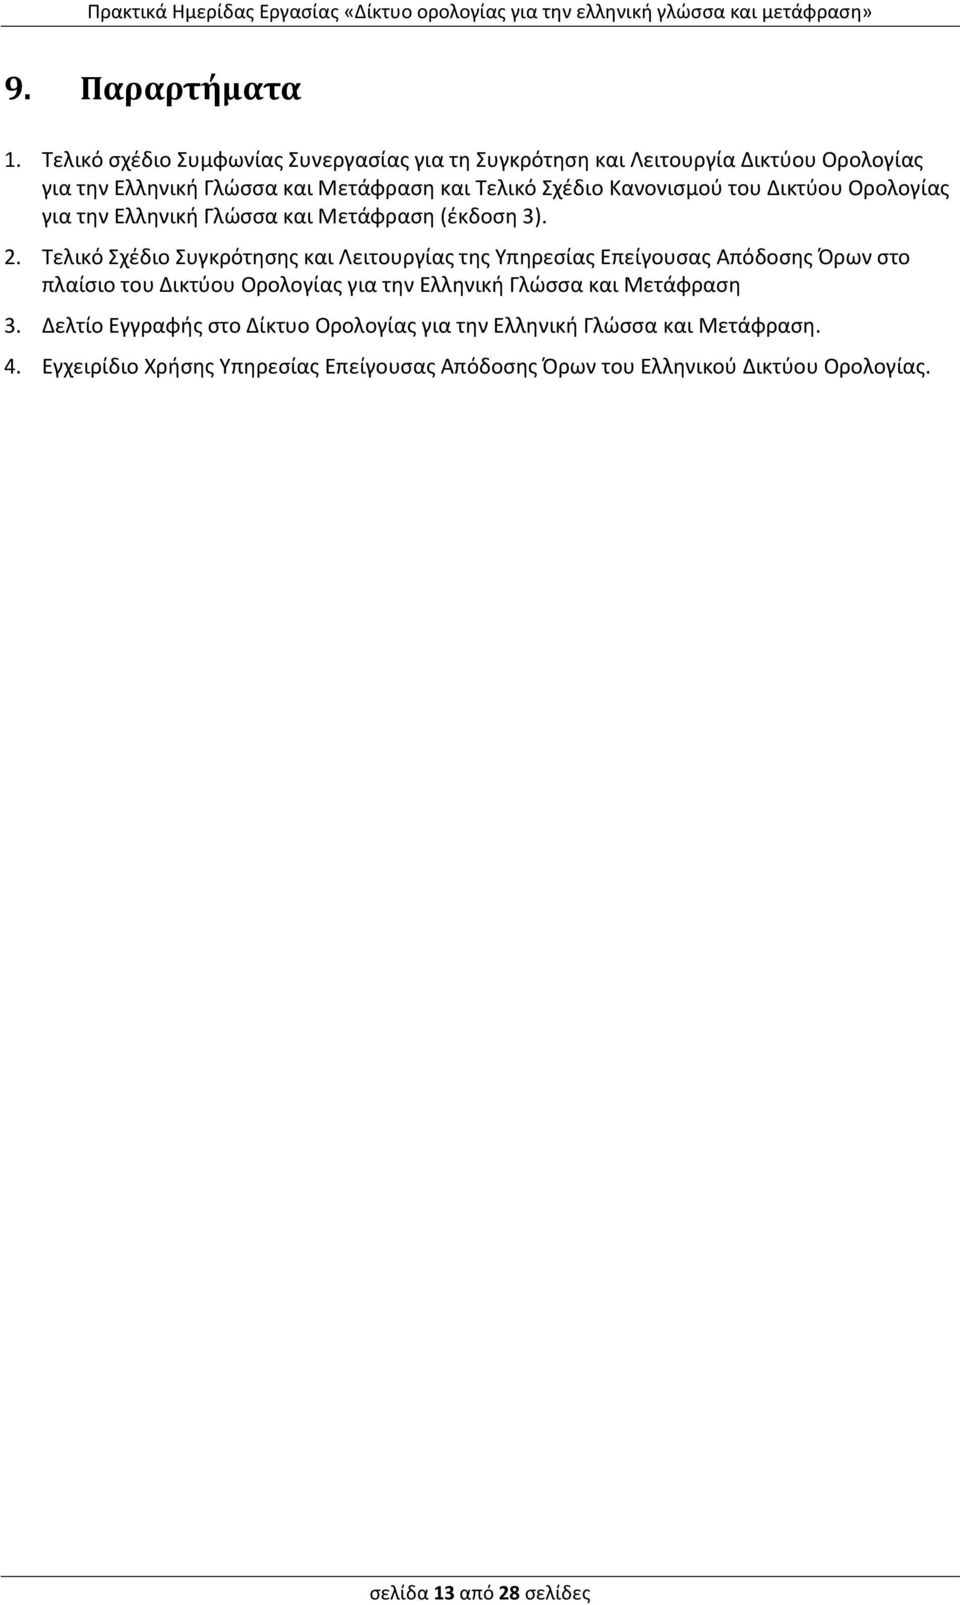 Κανονισμού του Δικτύου Ορολογίας για την Ελληνική Γλώσσα και Μετάφραση (έκδοση 3). 2.